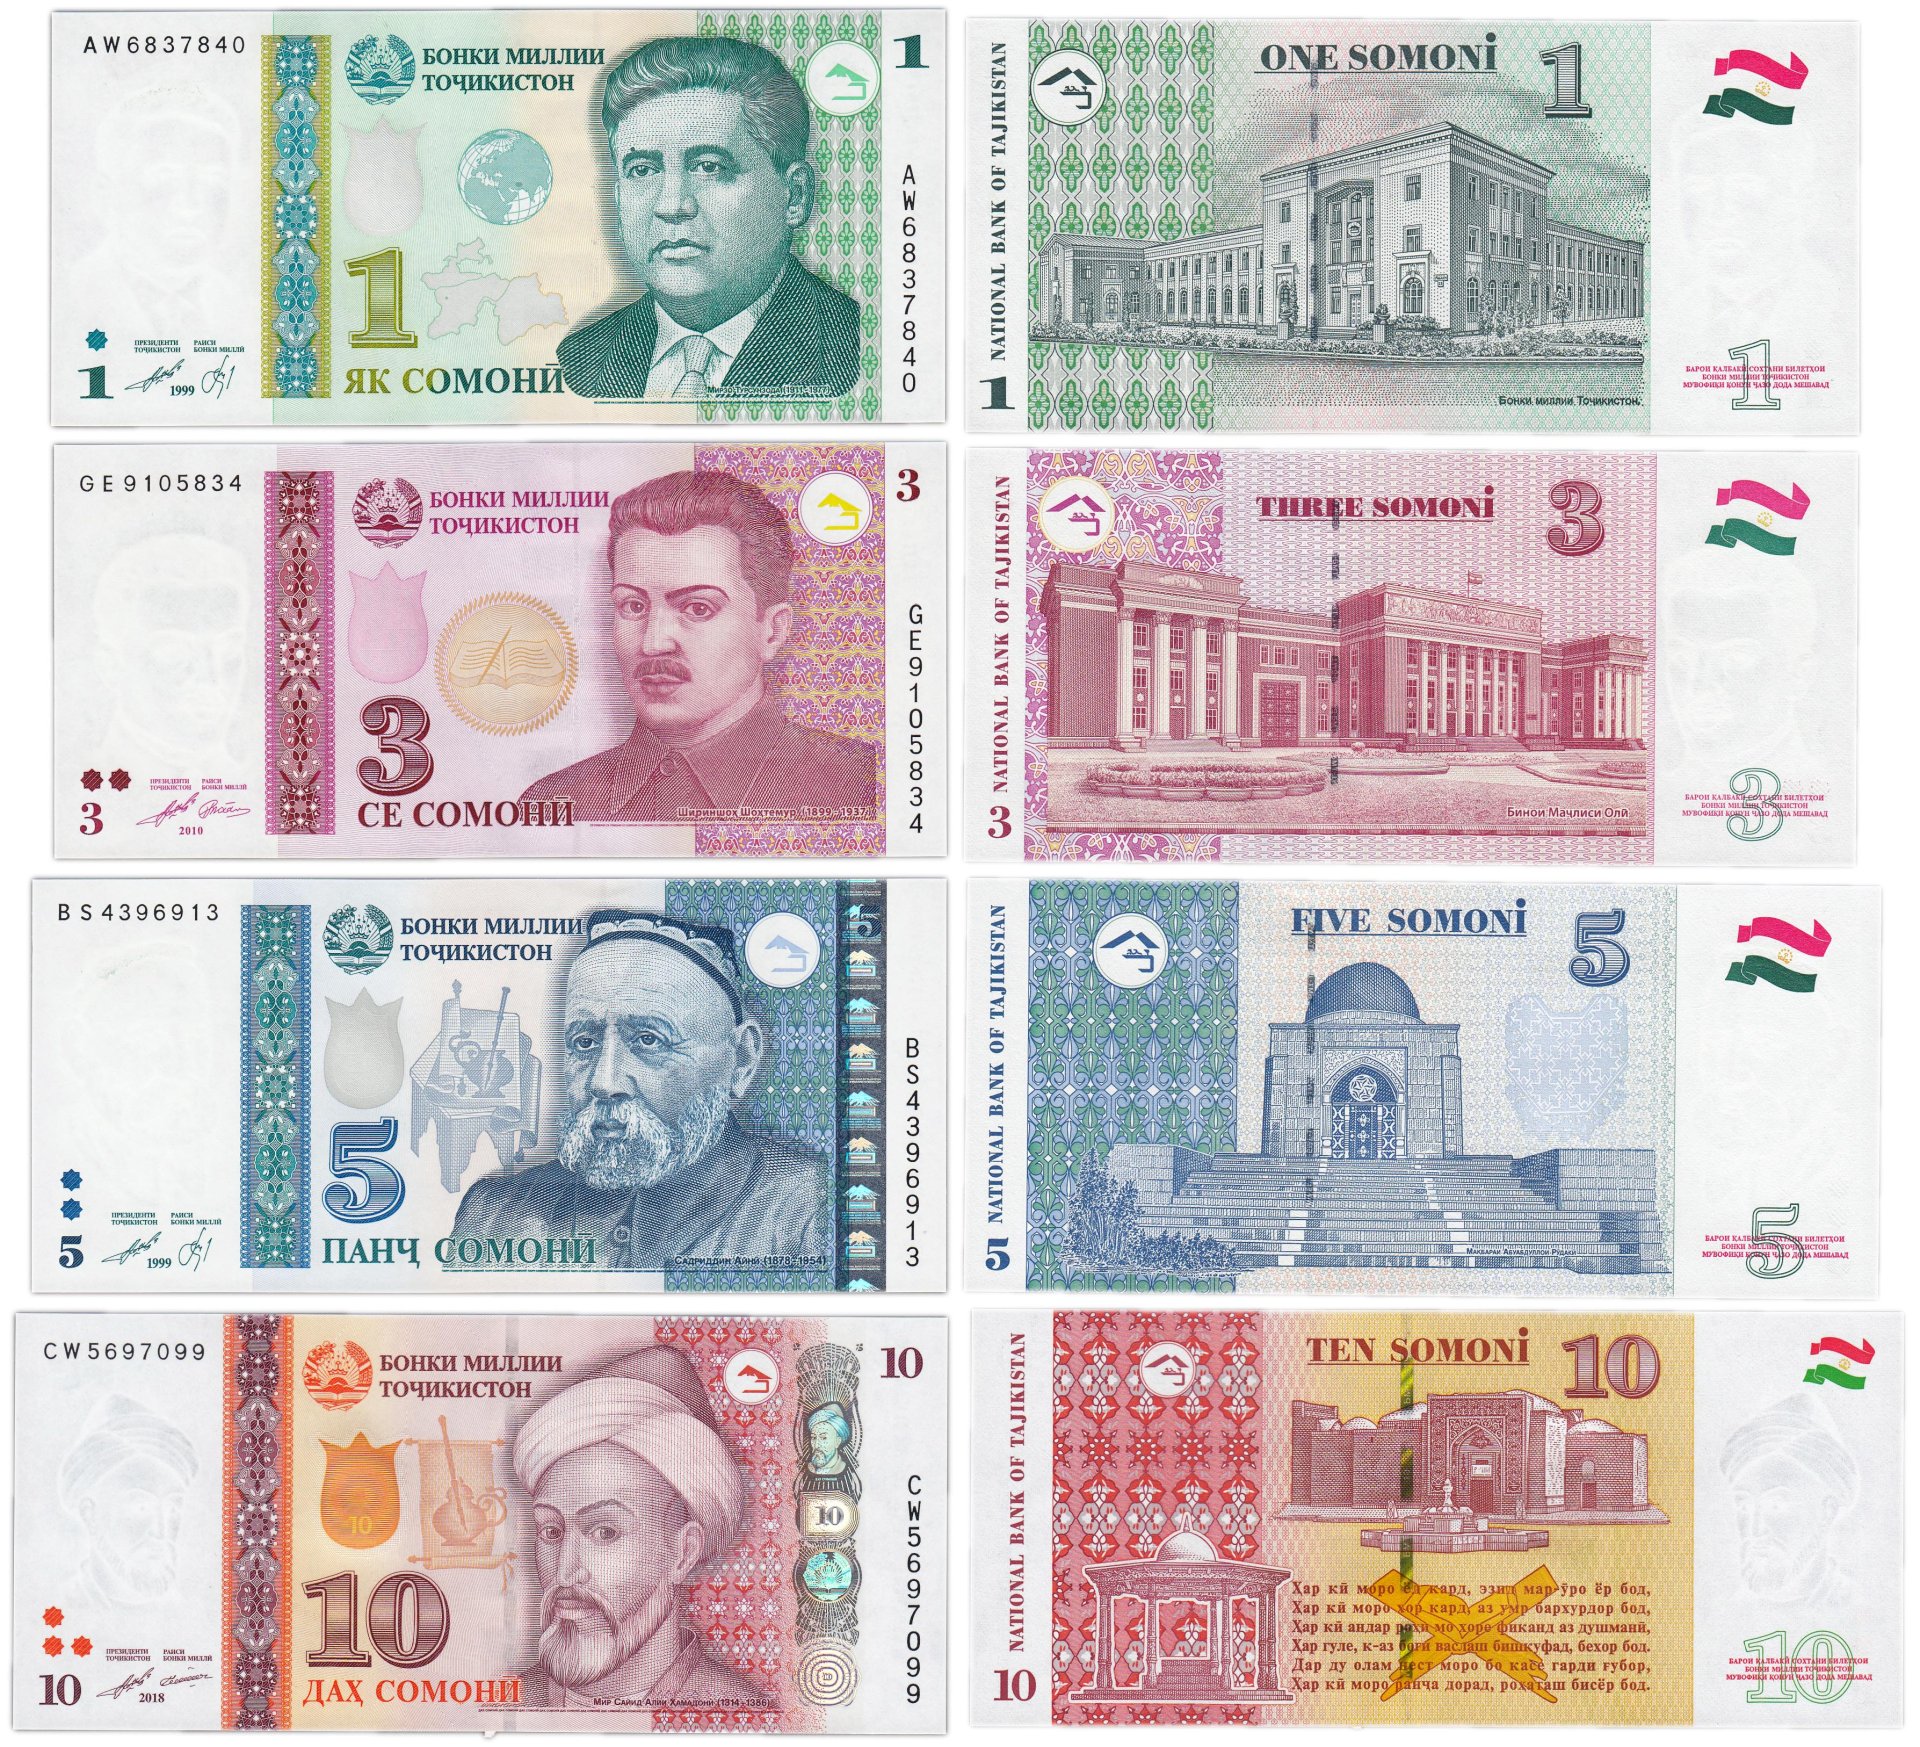 Таджикистан деньги в рублях. 1 Сомони Таджикистан купюра. Банкноты Сомони 1999 набор. Деньги Таджикистана 100 сомонй. 1 Сомони 1999 Таджикистан.